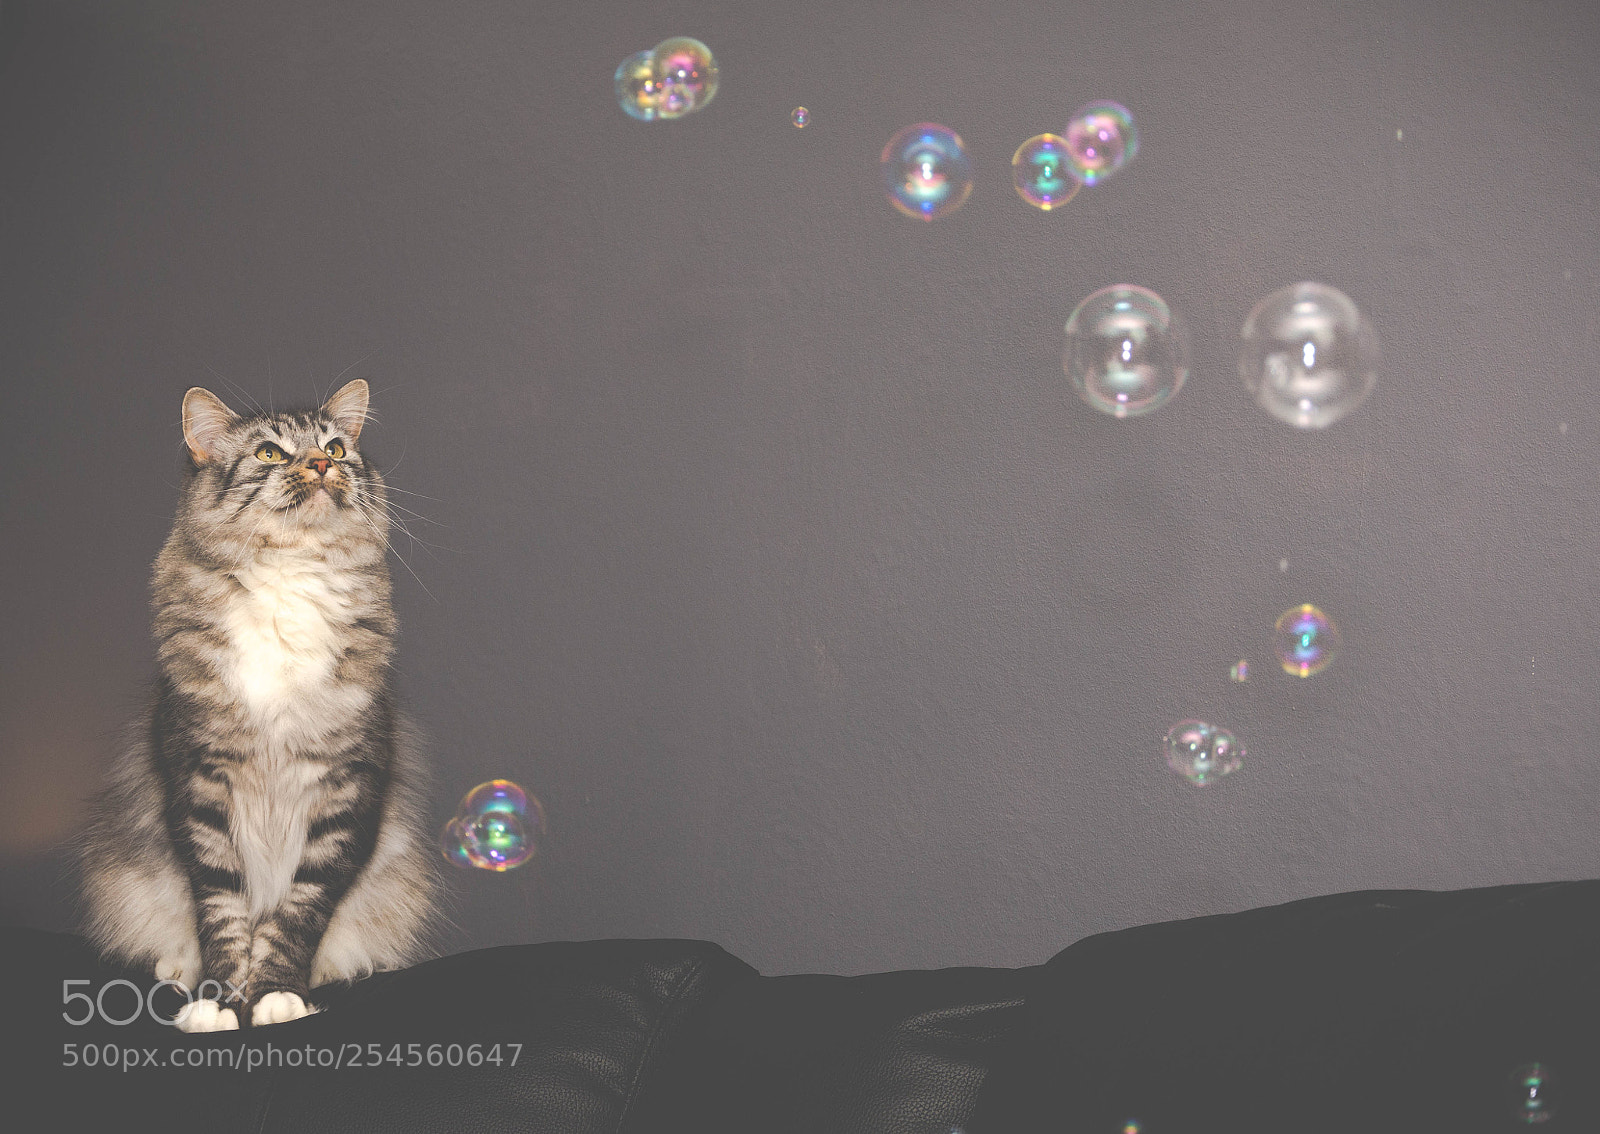 Nikon D7200 sample photo. Cat bubbles photography